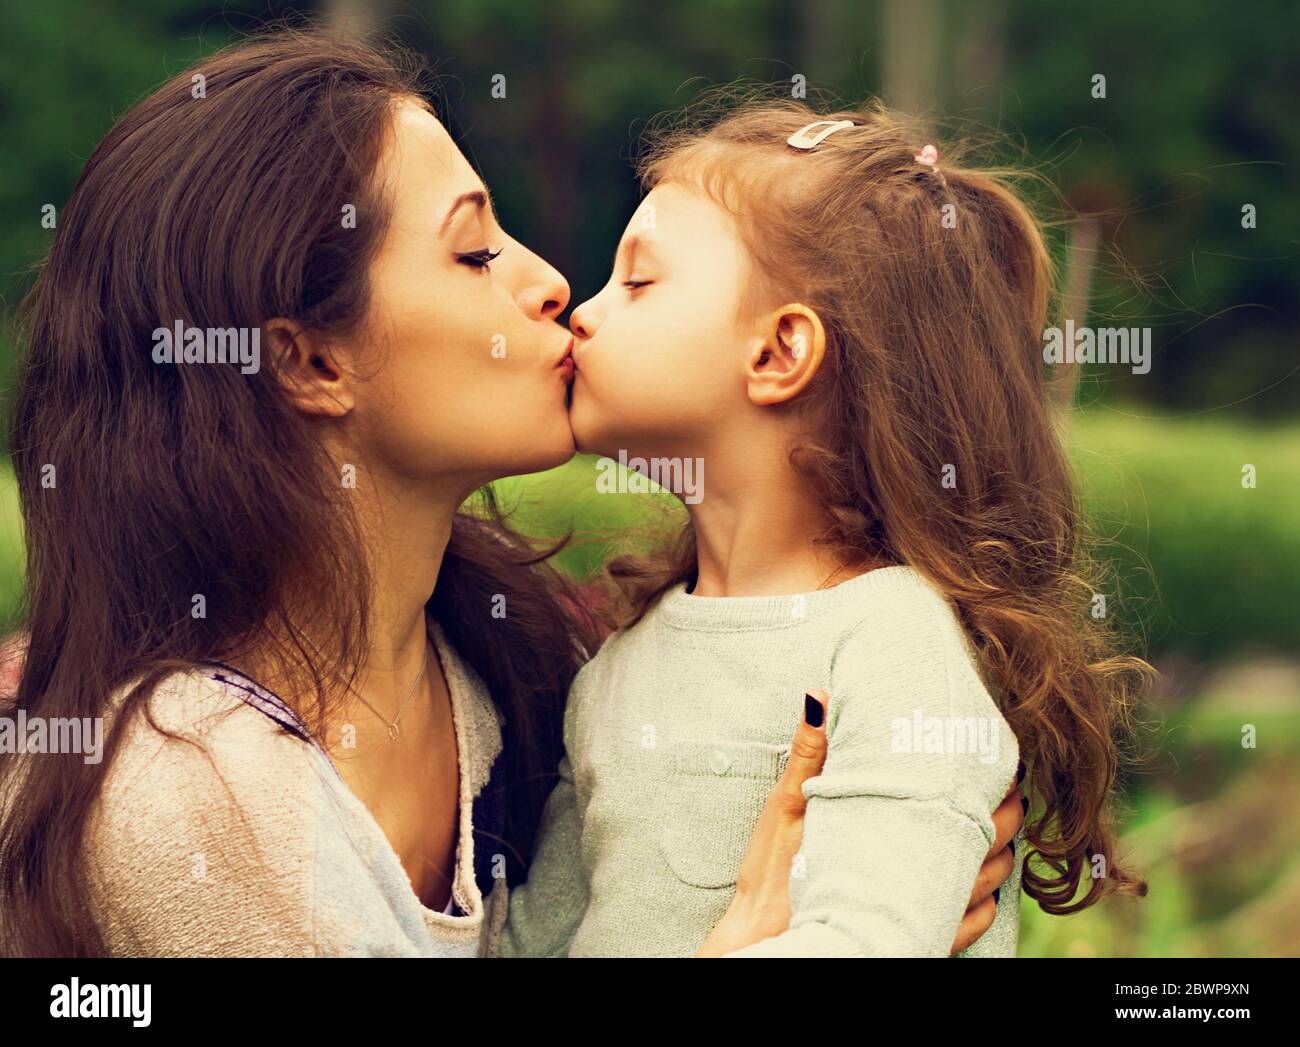 children kissing on the lips